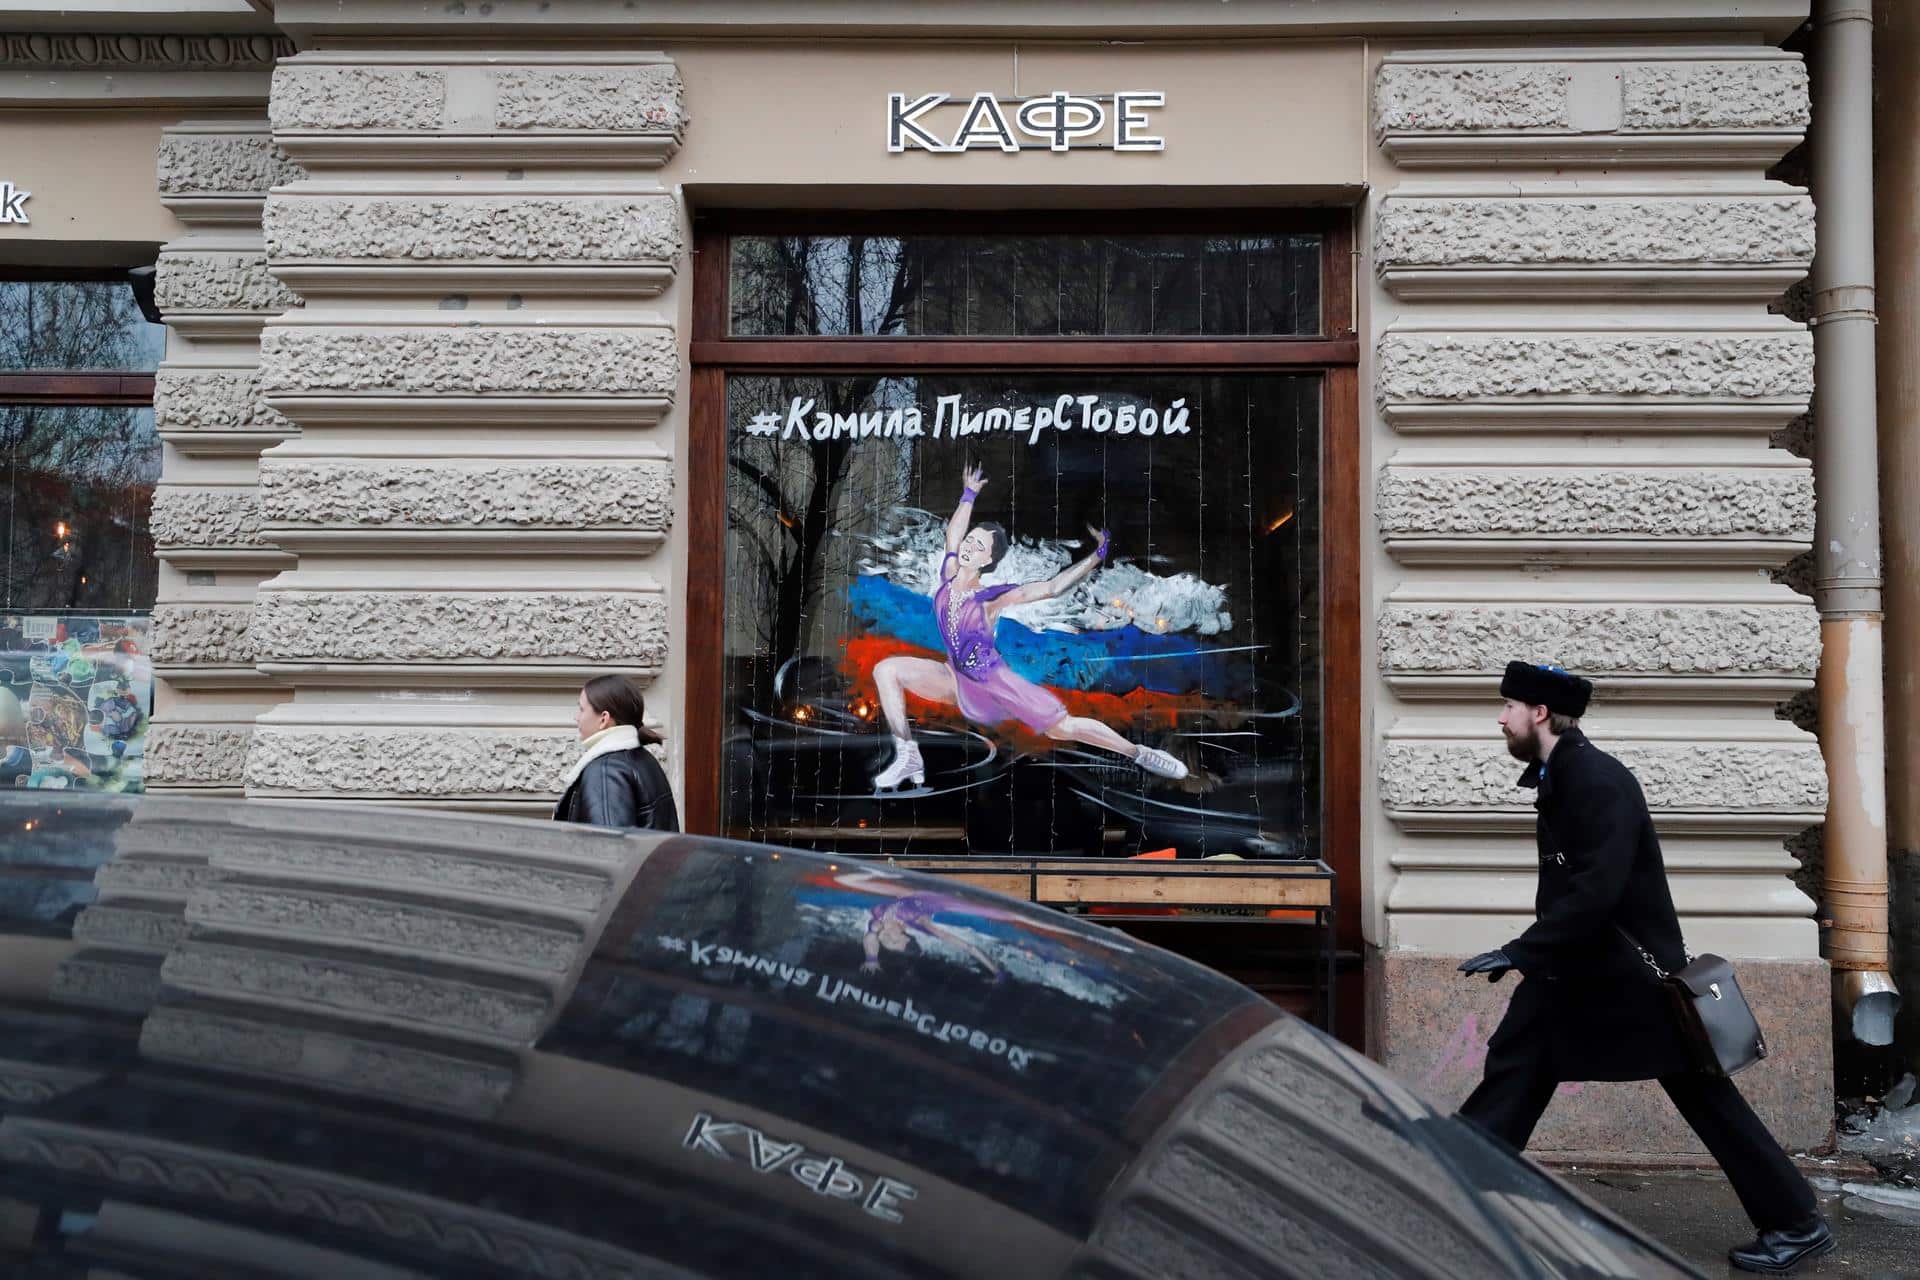 Graffiti en apoyo a Valieva en una cafetería de San Petersburgo: "Kamila, estamos contigo".